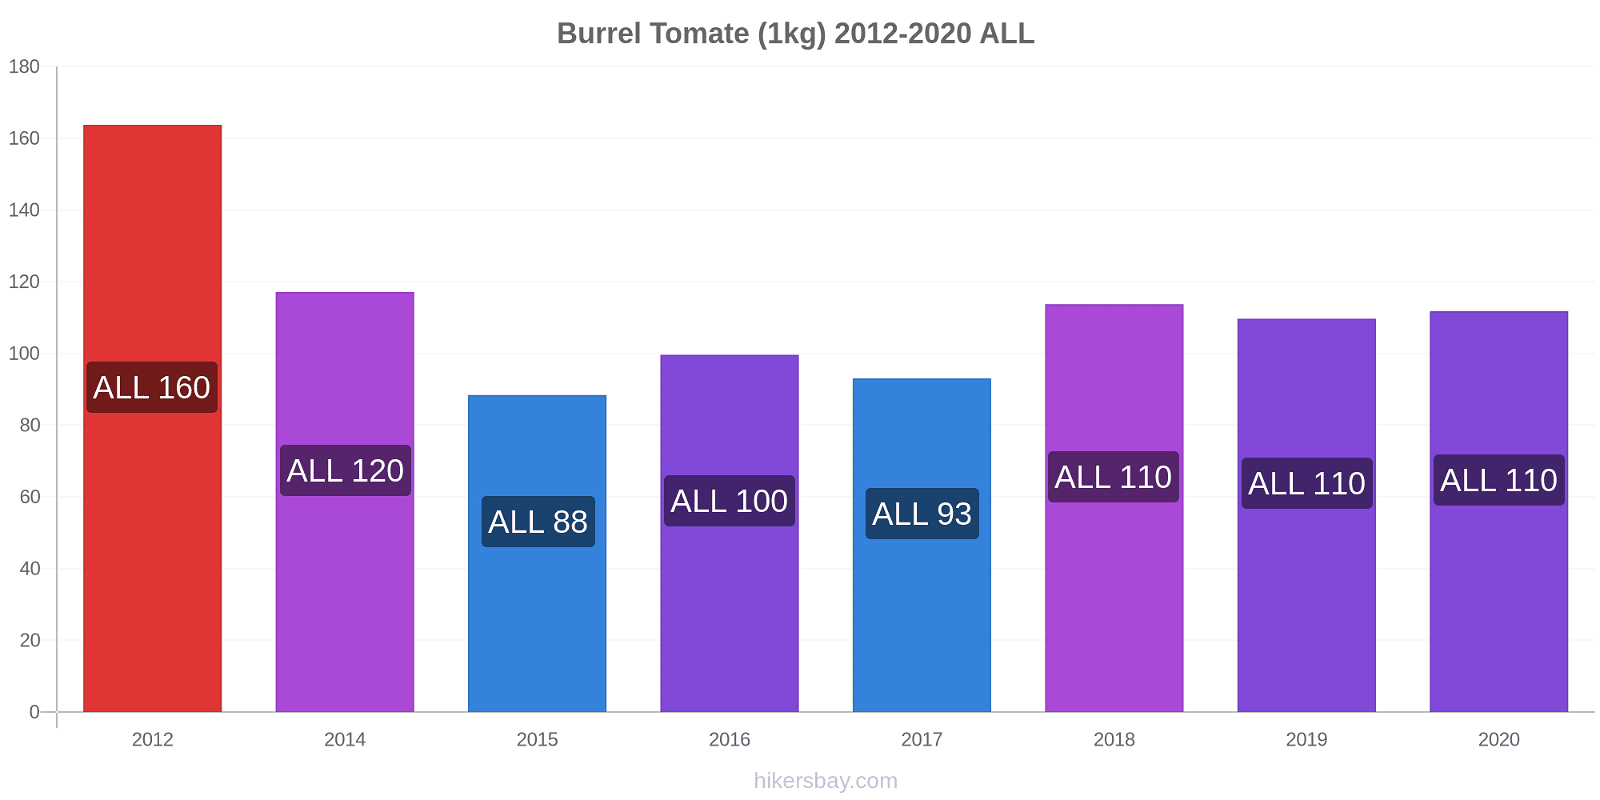 Burrel Preisänderungen Tomaten (1kg) hikersbay.com